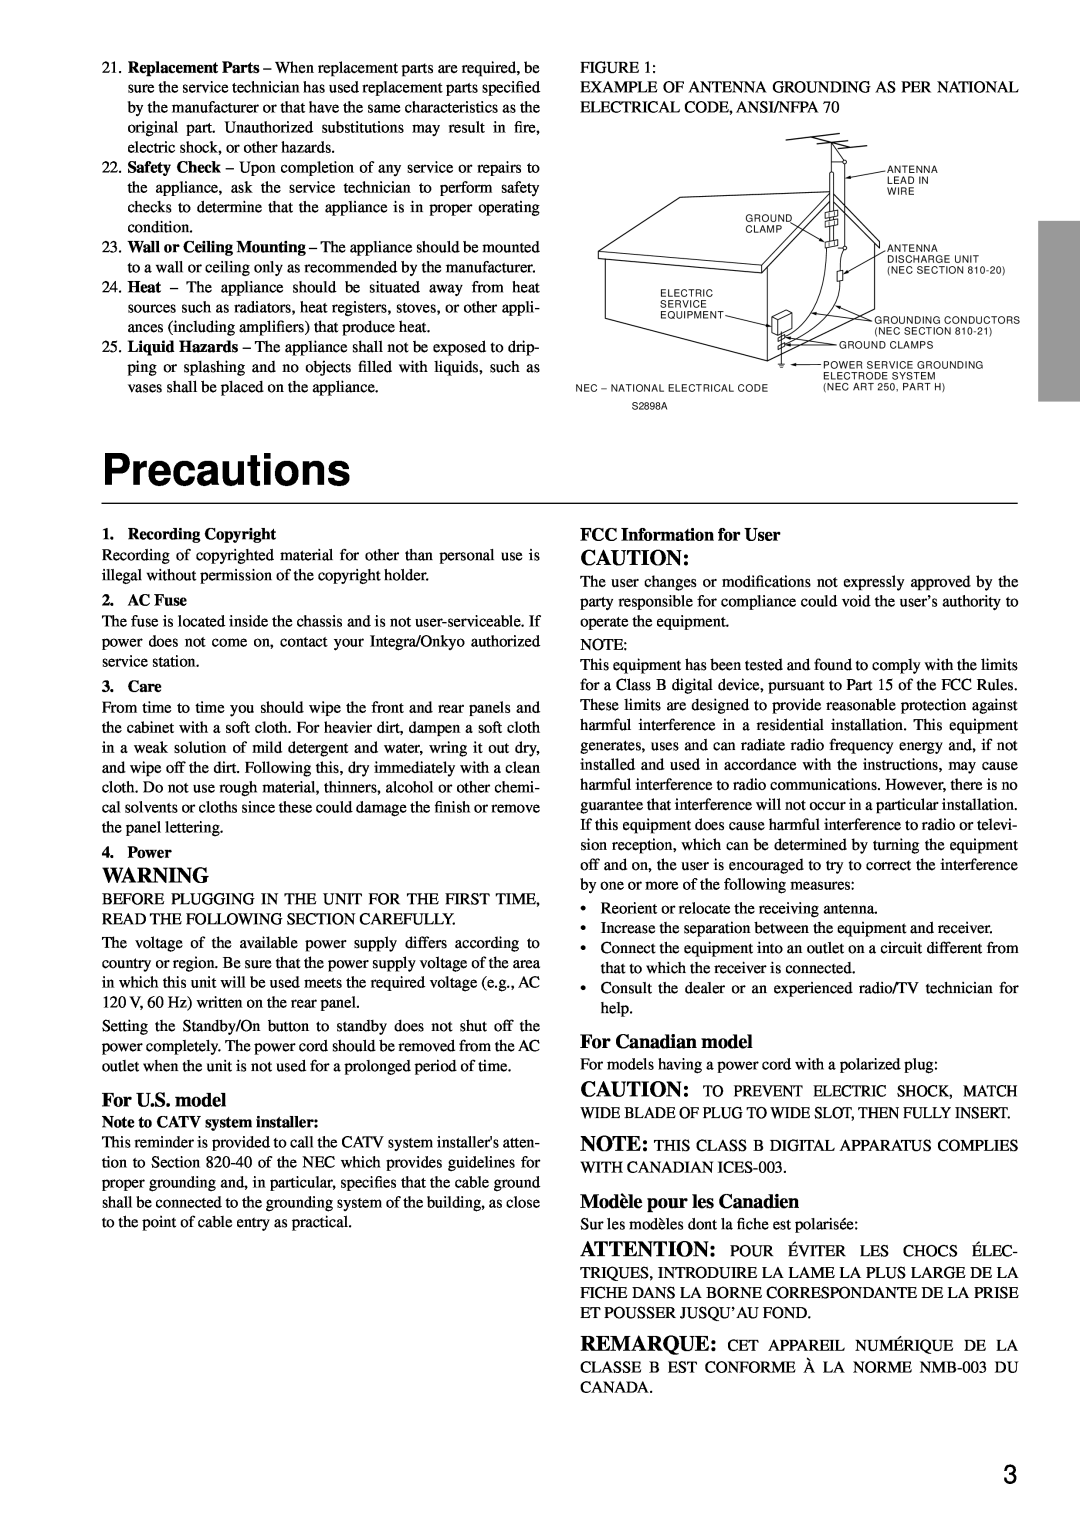 Integra DTM-5.3 Precautions, For U.S. model, For Canadian model, Modèle pour les Canadien, FCC Information for User 